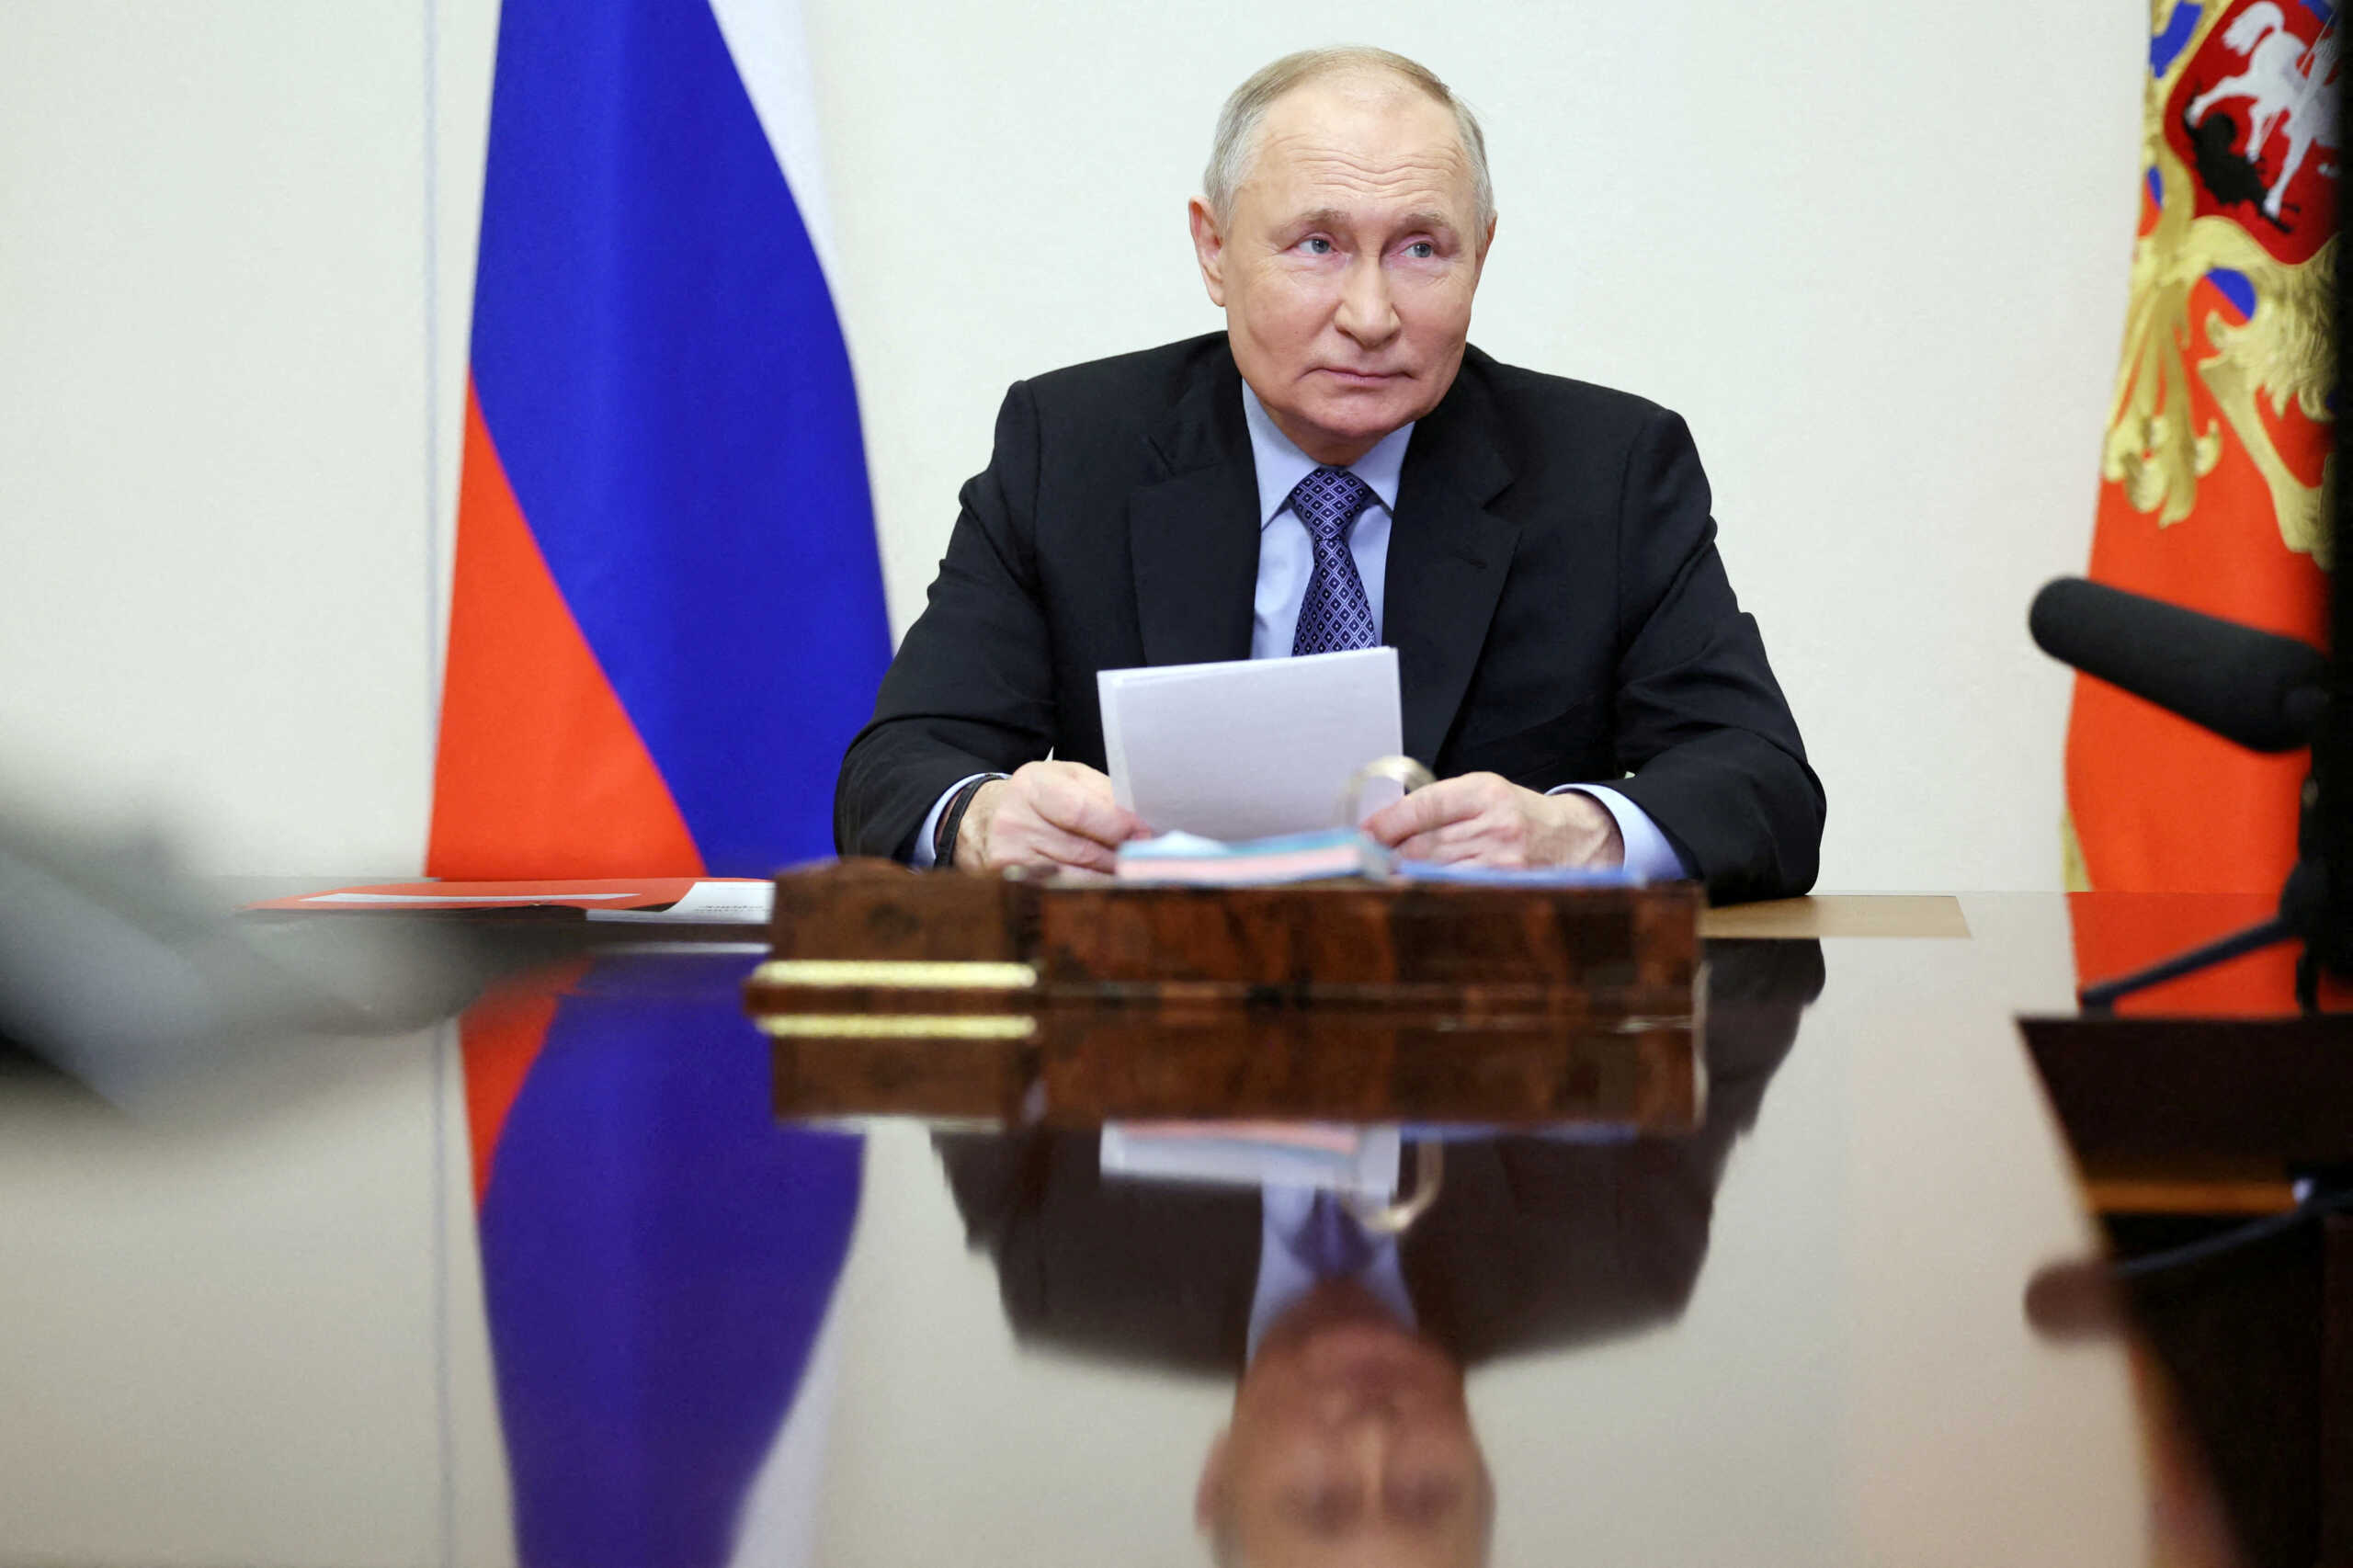 Αλεξέι Ναβάλνι: «Ο Πούτιν είναι ένας άπληστος, φοβισμένος γέρος» λέει ο Βλαντιμίρ Καρά, ηγετική μορφή της αντιπολίτευσης